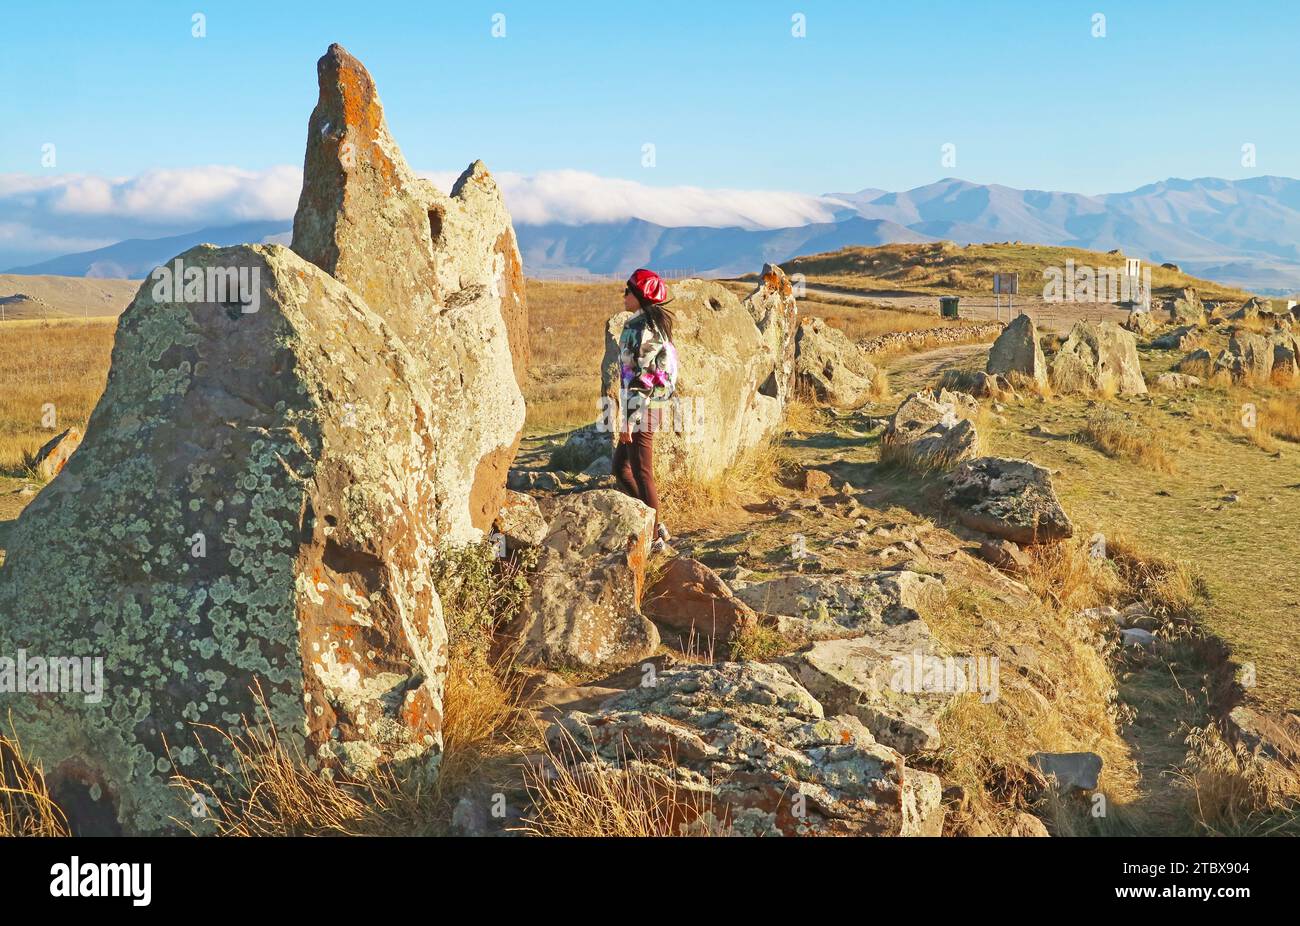 Femme Voyageuse visitant le site archéologique préhistorique de Carahunge ou Stonehenge arménien dans la province de Syunik en Arménie Banque D'Images